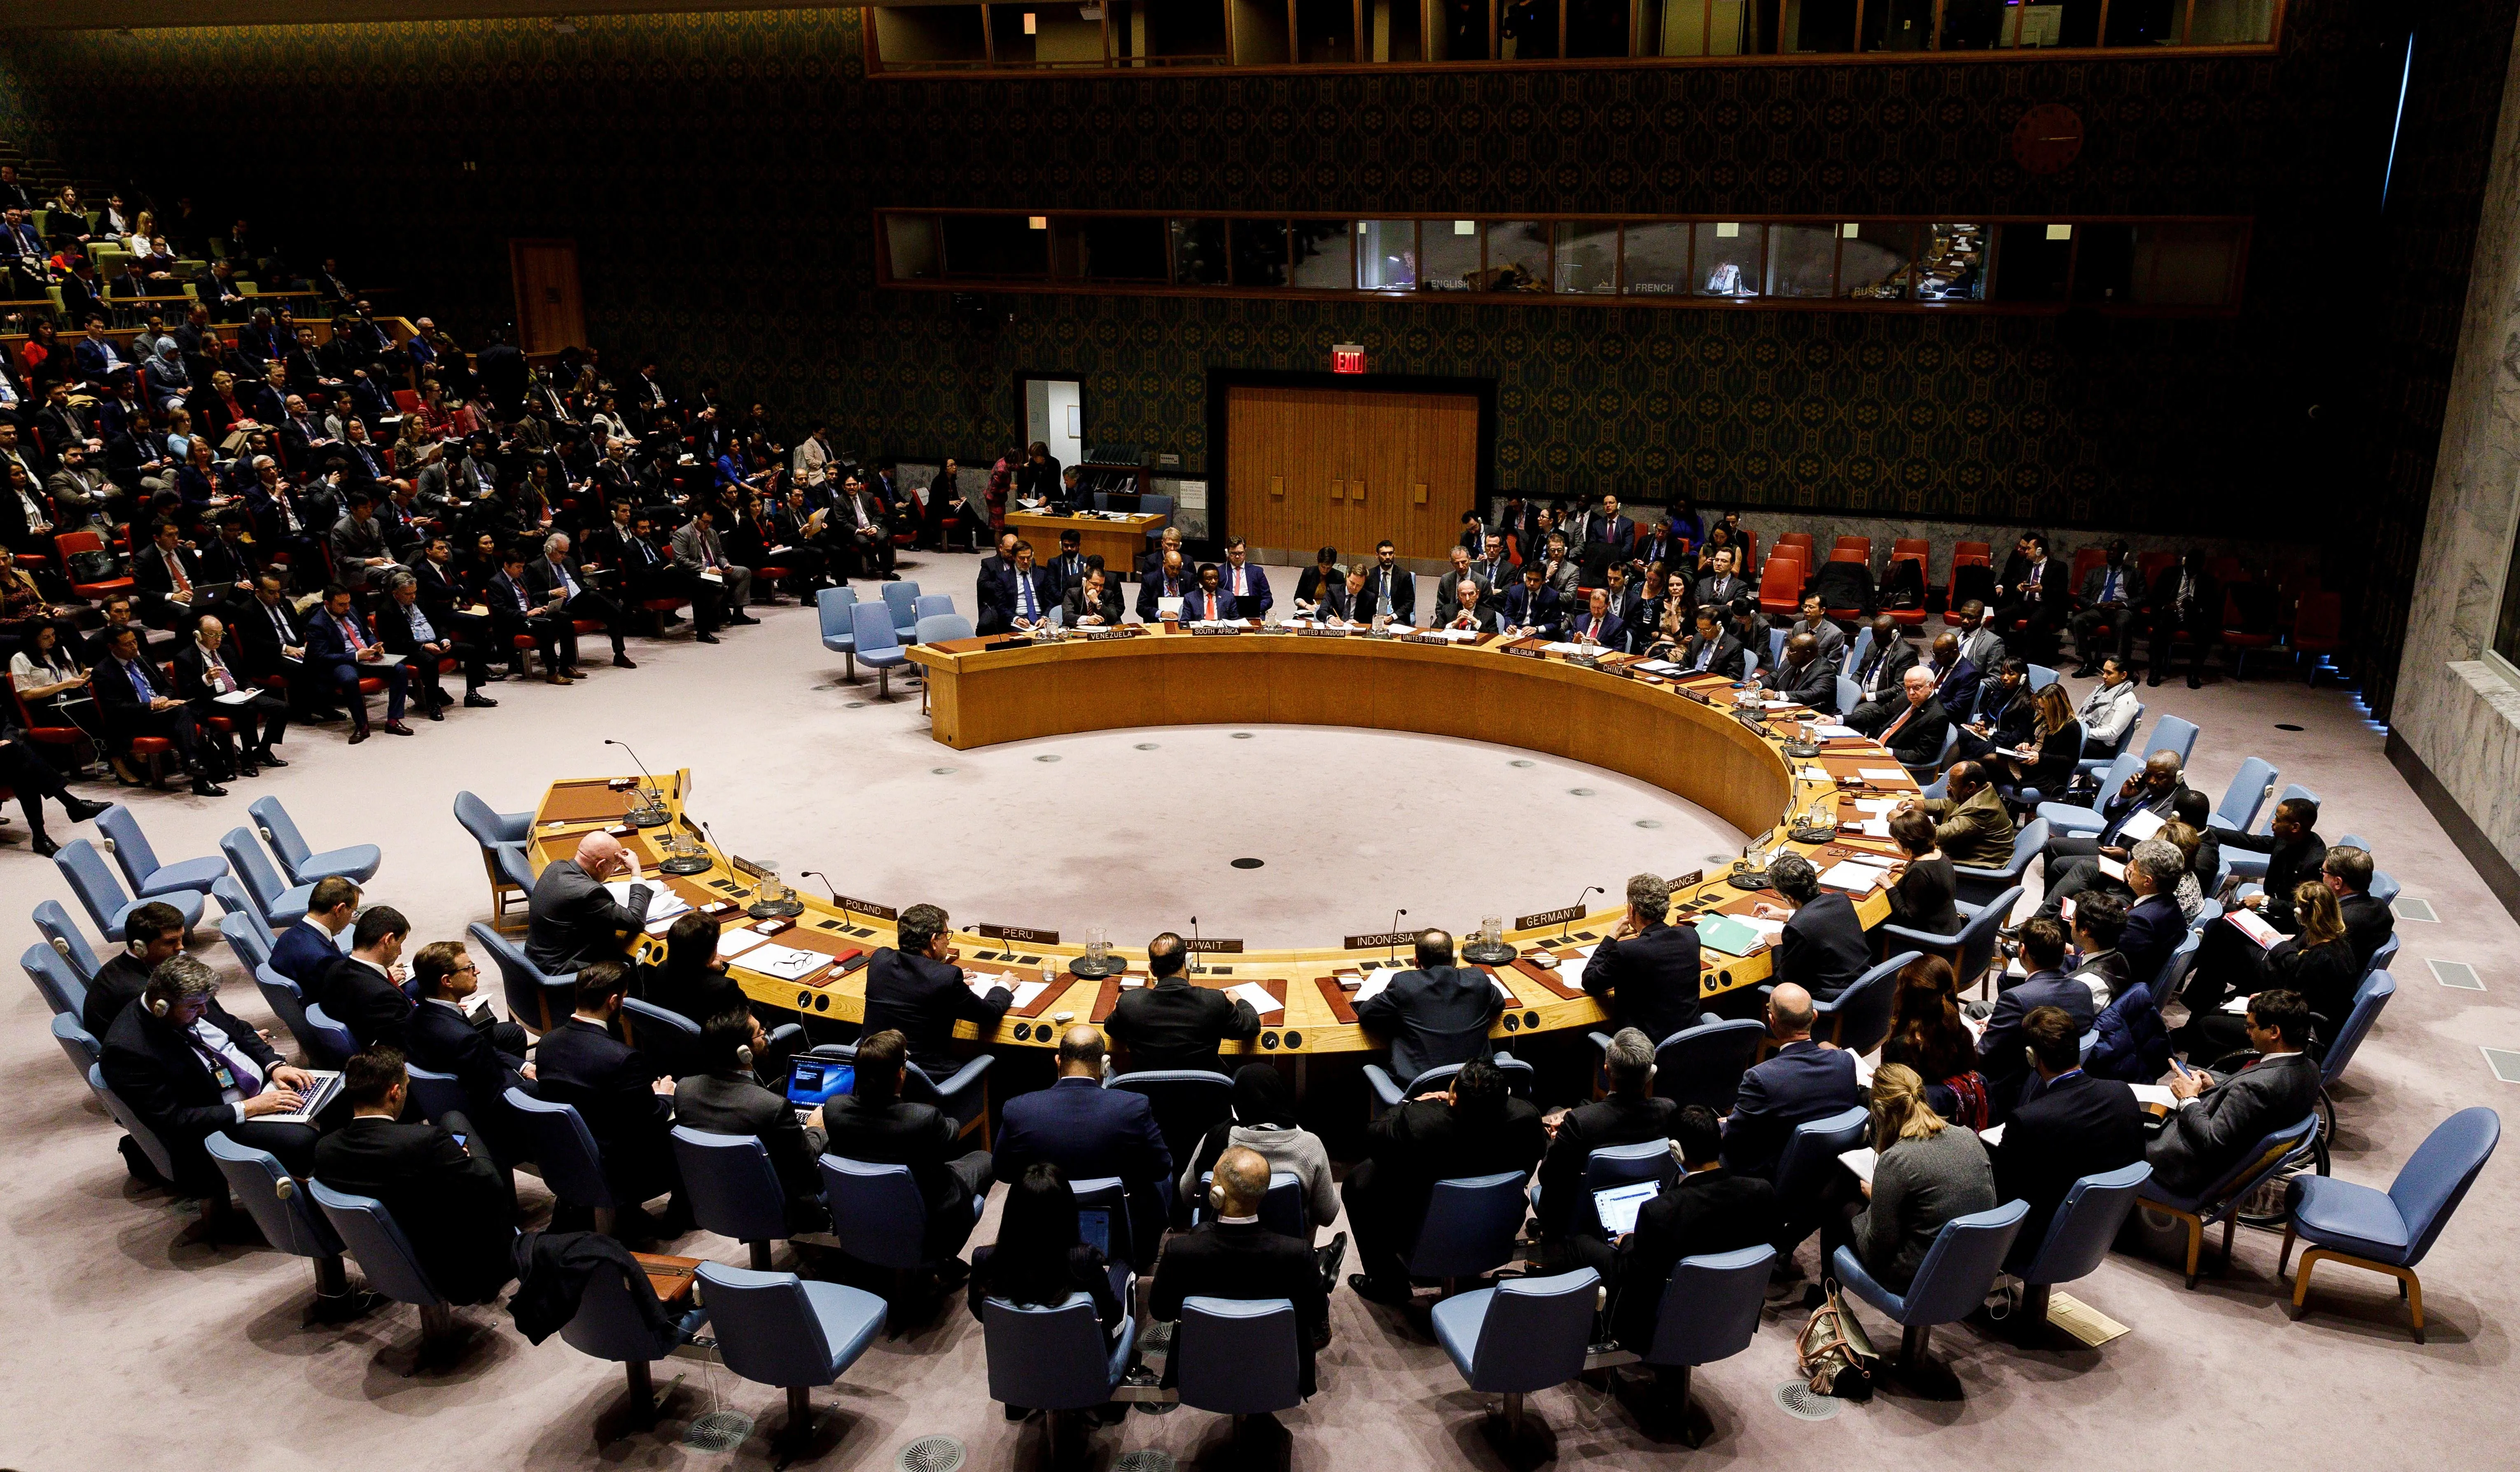 Con esperanza, que el Consejo de Seguridad adopte decisiones sabias sobre Haití